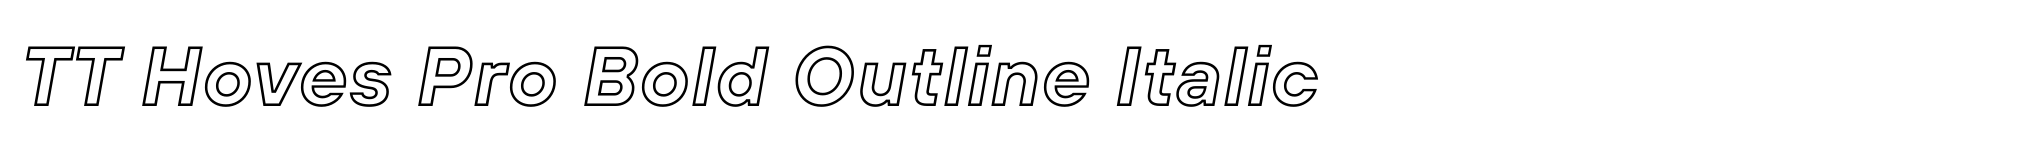 TT Hoves Pro Bold Outline Italic image